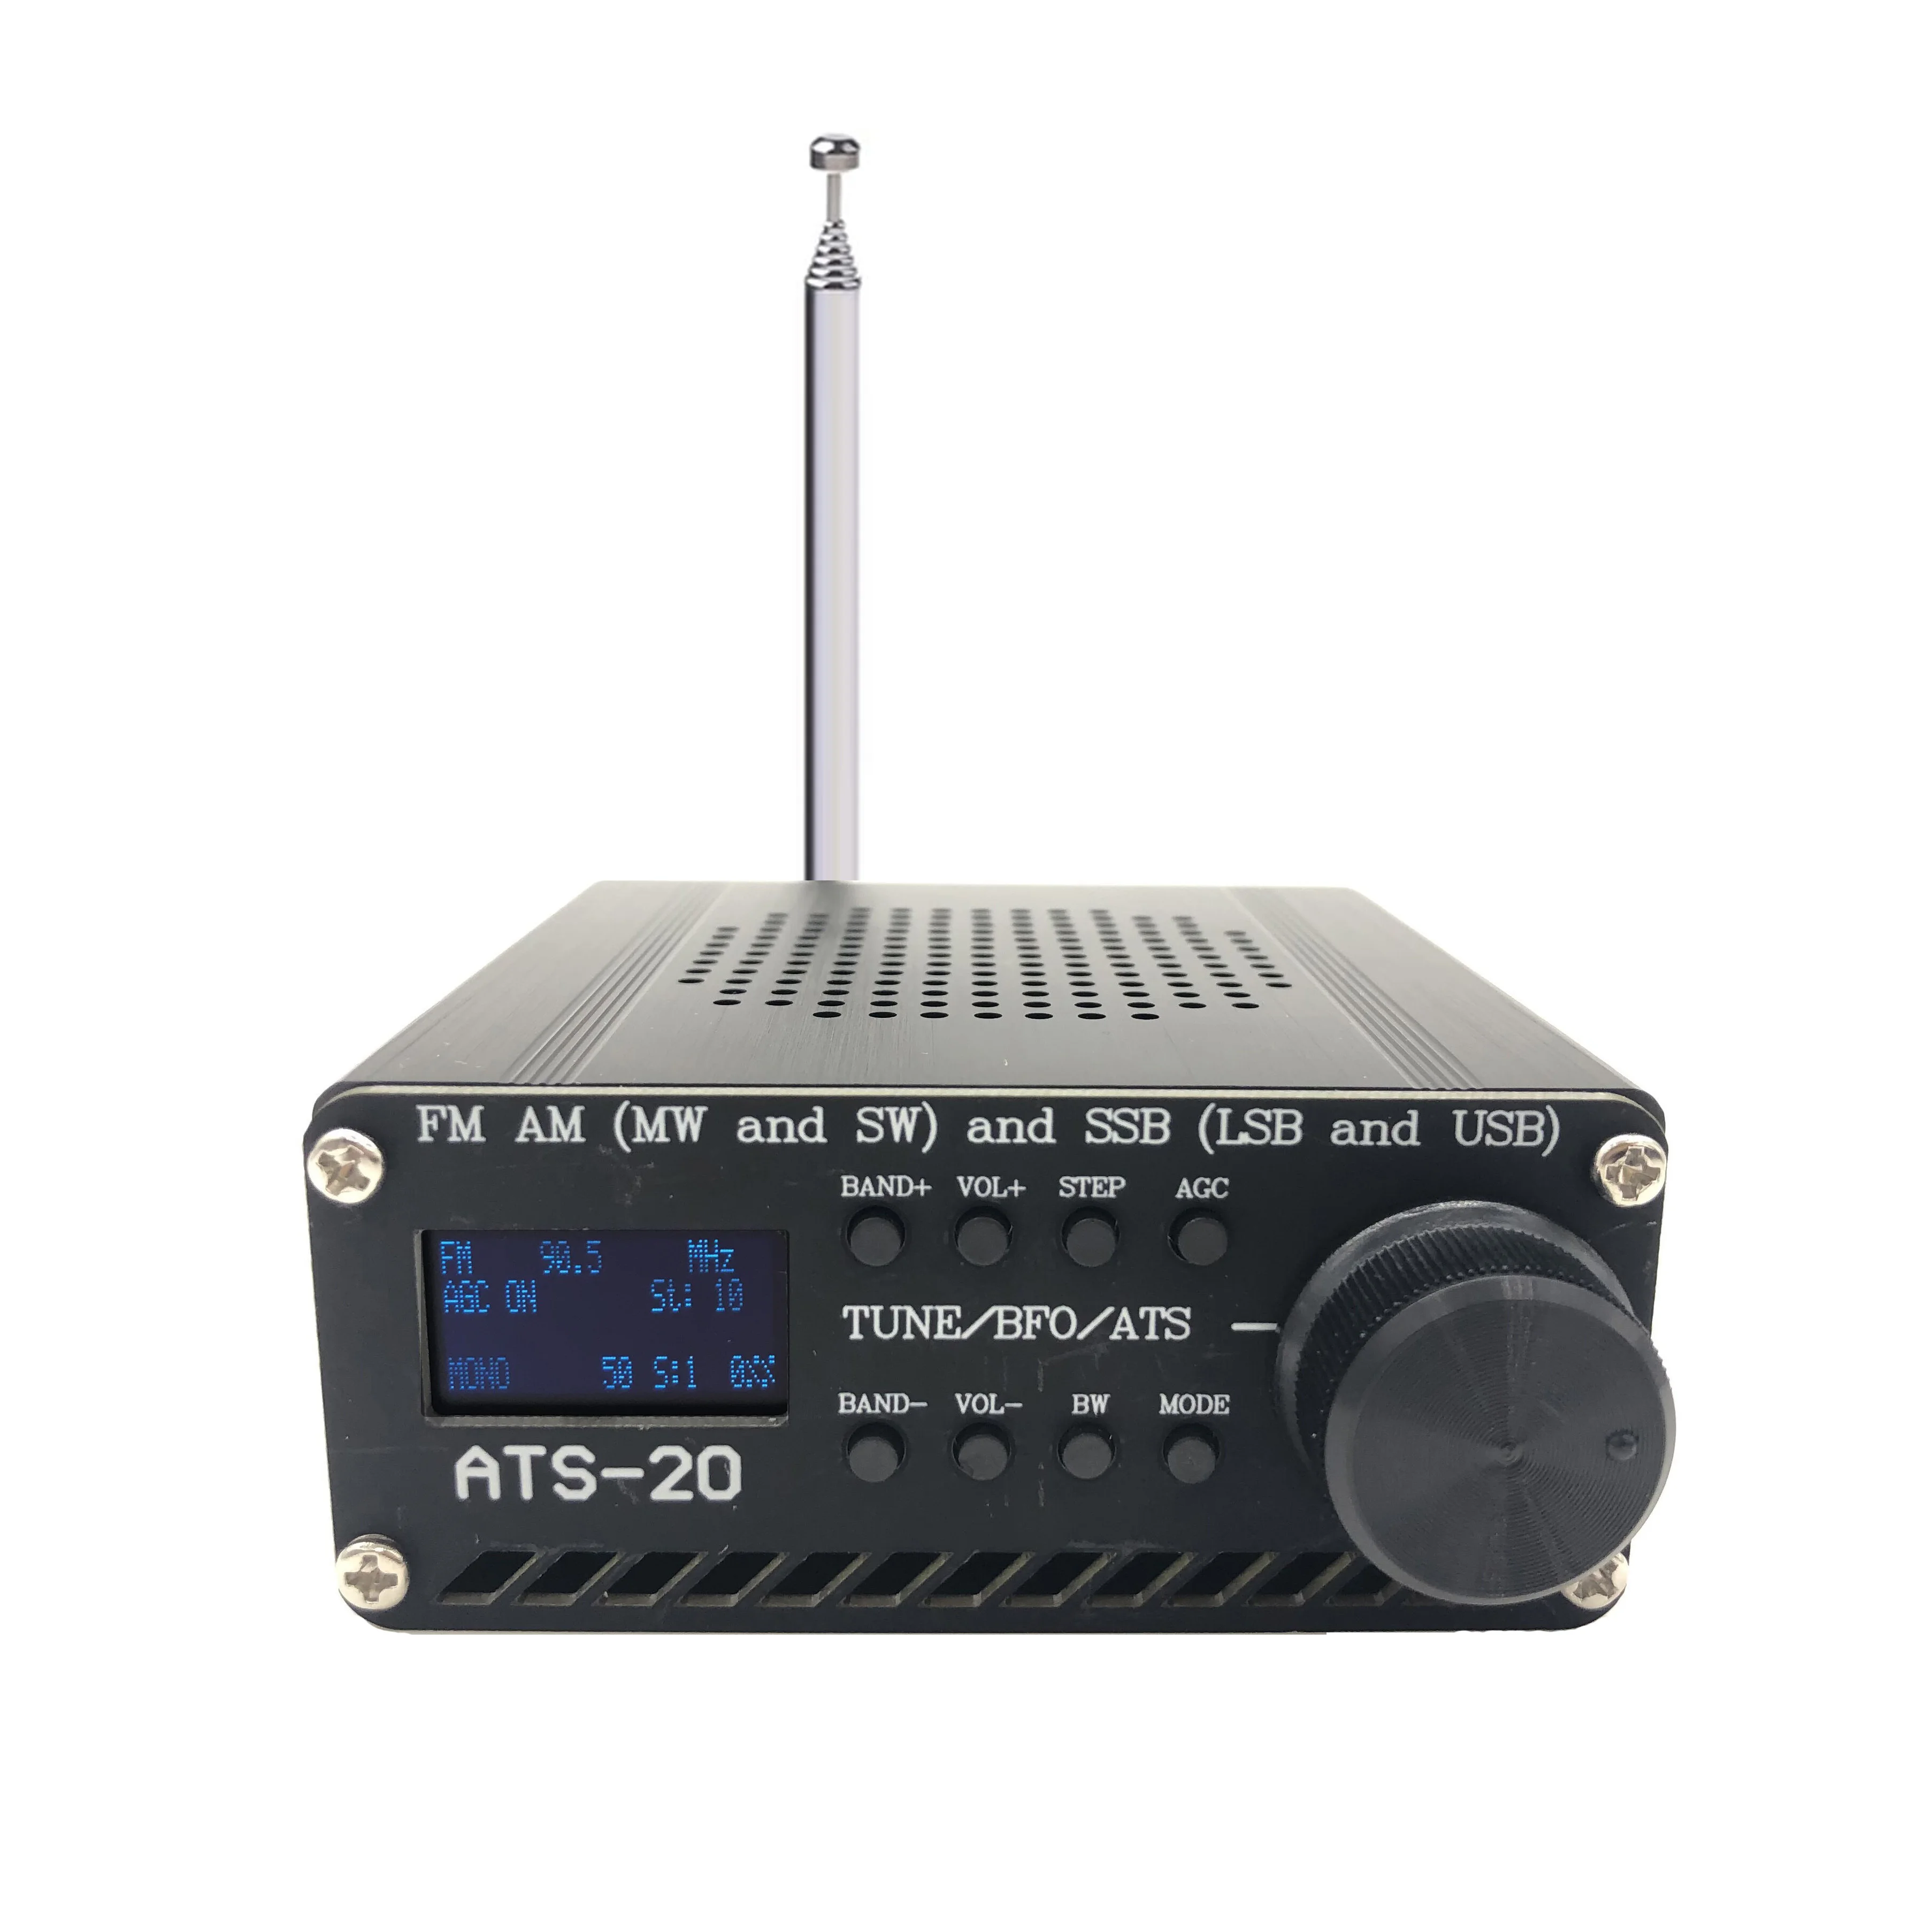 ANYSECU SI4732 Shortwave AM FM Radio AIR Band DSP Full Band (MW & SW) SSB (LSB & USB) Scanner Portable Radio